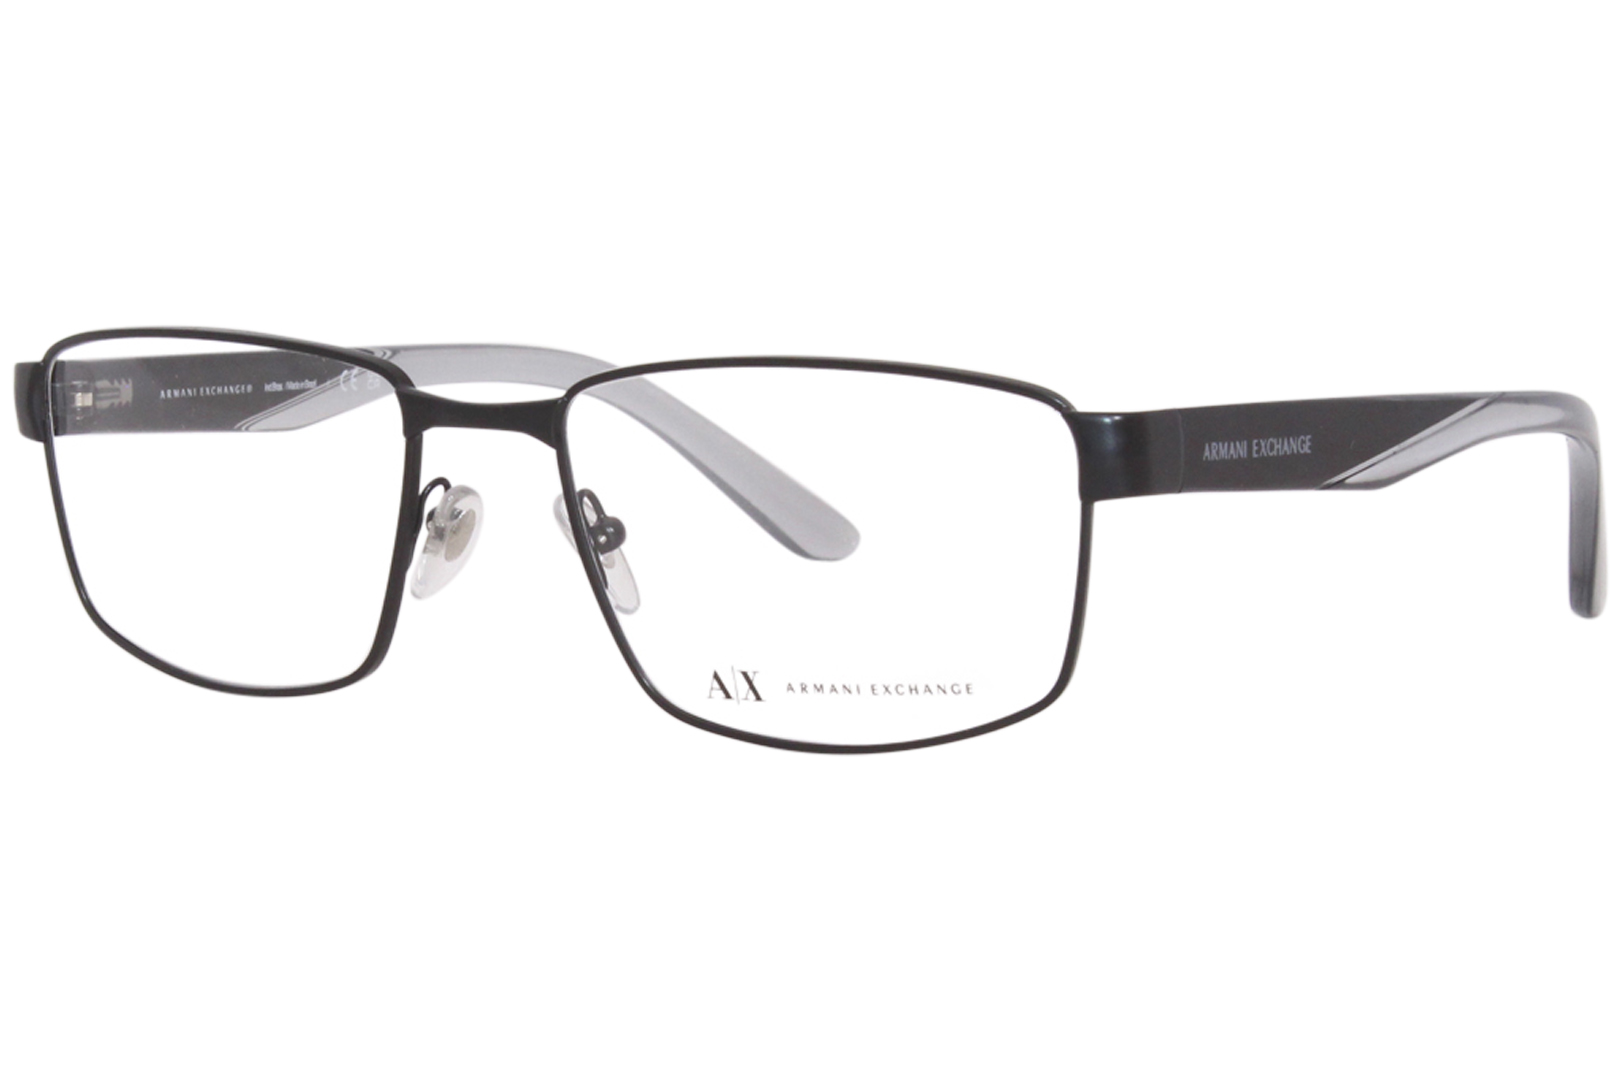 EAN 7895653177925 product image for Armani Exchange Eyeglasses Frame Men's AX1036 6063 Matte Black 55 18 145 - Lens- | upcitemdb.com